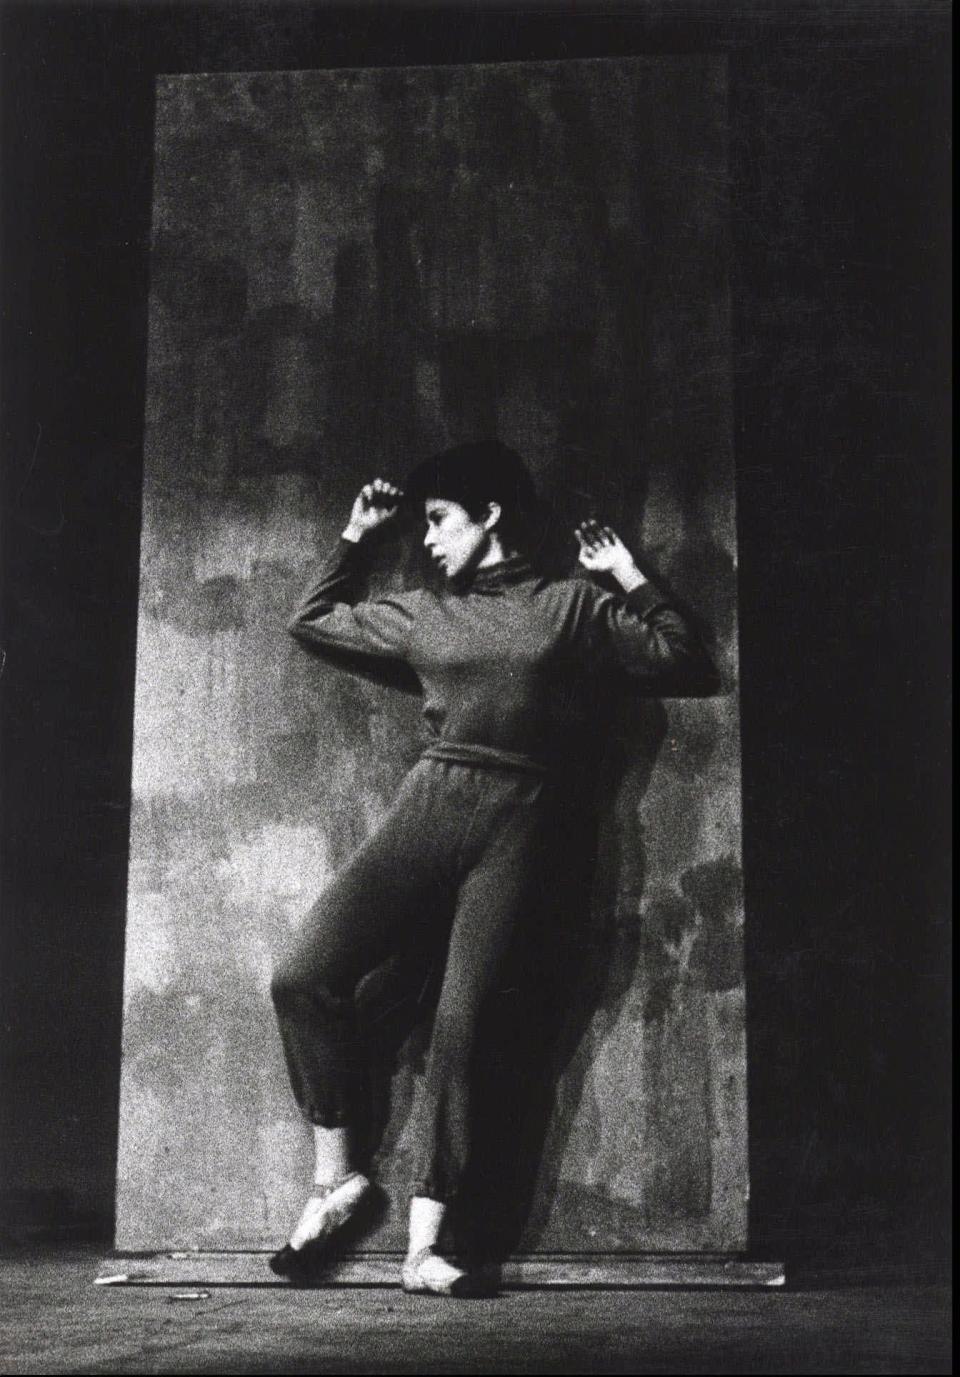 Deborah Hay performing her 1965 dance piece, "Flat."